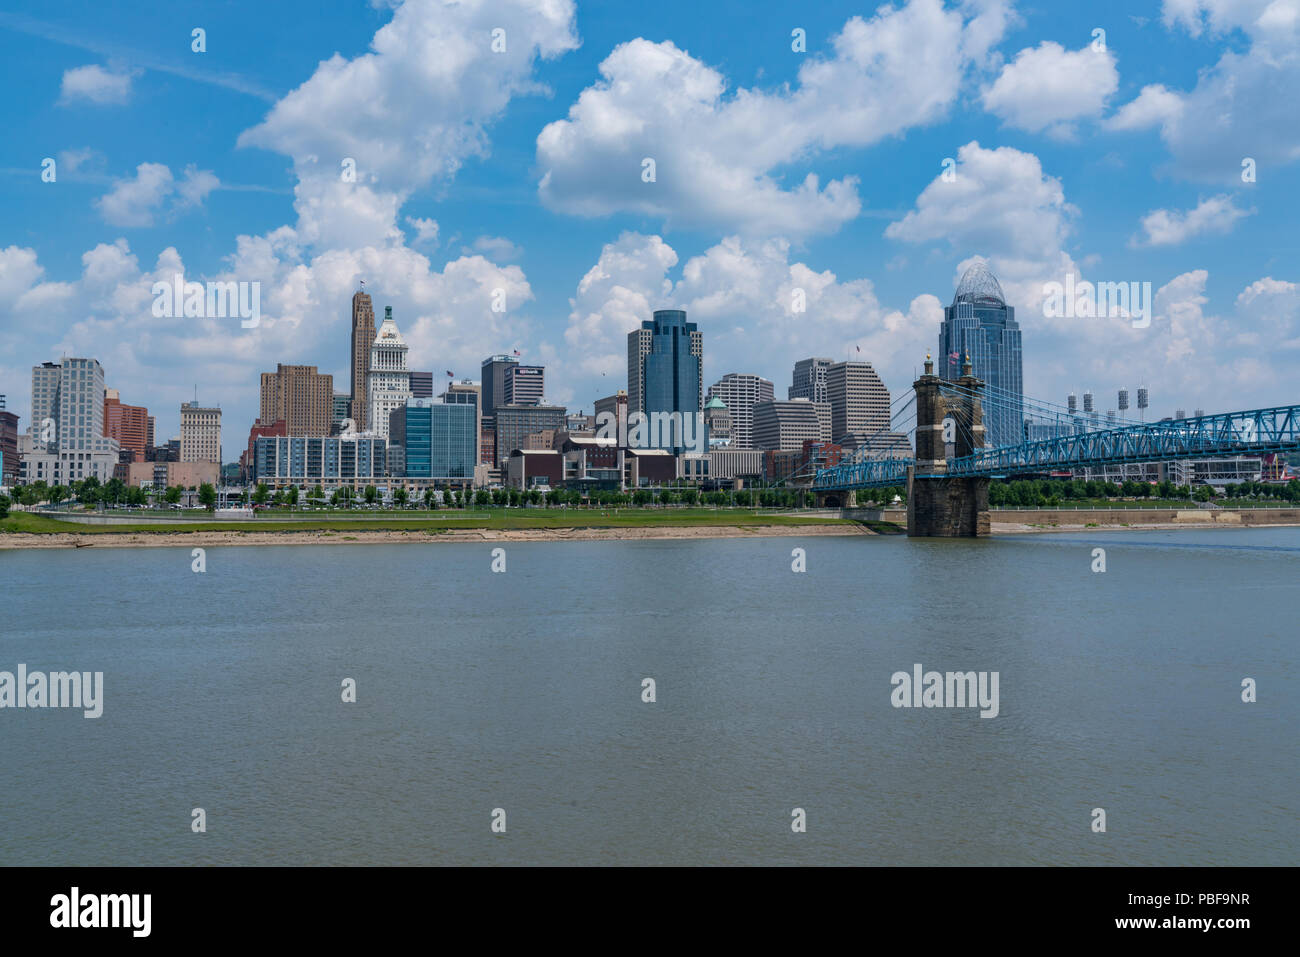 CINCINNATI, OH - JUNE 18, 2018: Cincinnati, Ohio City Skyline along the Ohio River Stock Photo